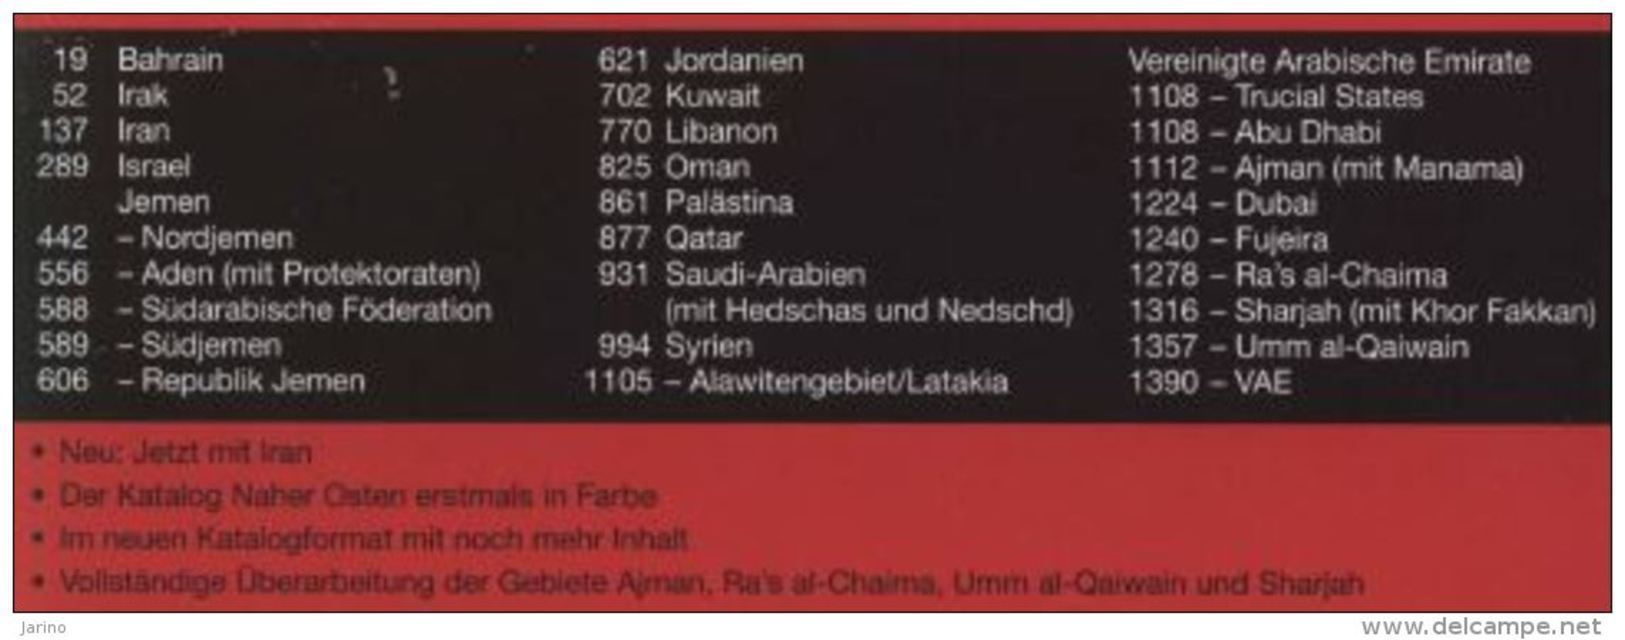 Katalog Michel Naher Osten 2013,1455 Farbseiten DVD-R Israel Verein. Arab. Emirate Dubai Kuwait Jemen Libanon Palästine